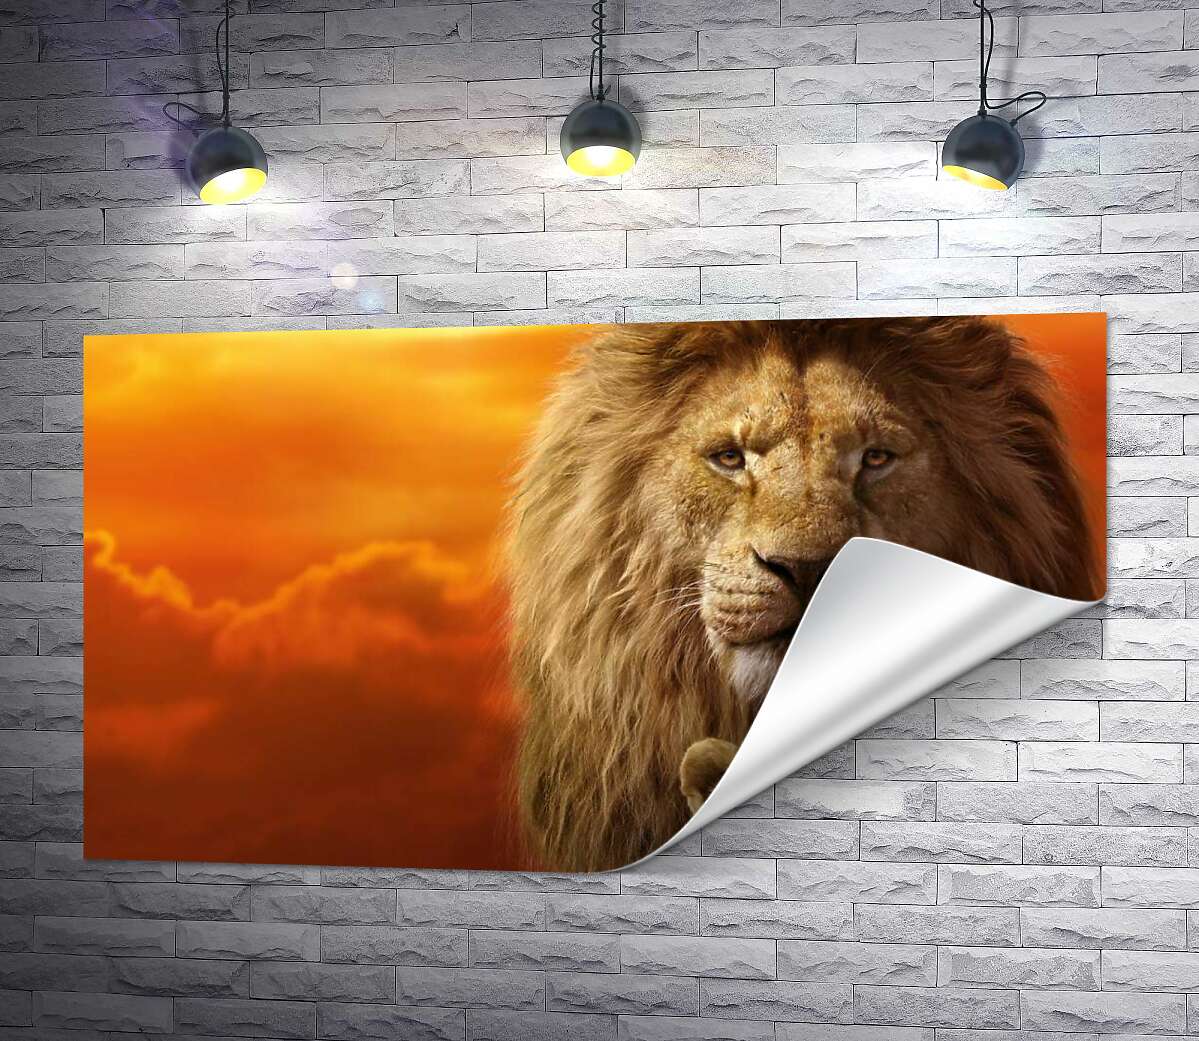 друк Король-лев, Муфаса, та його син, Сімба, на постері до фільму "Король-лев" (The Lion King)